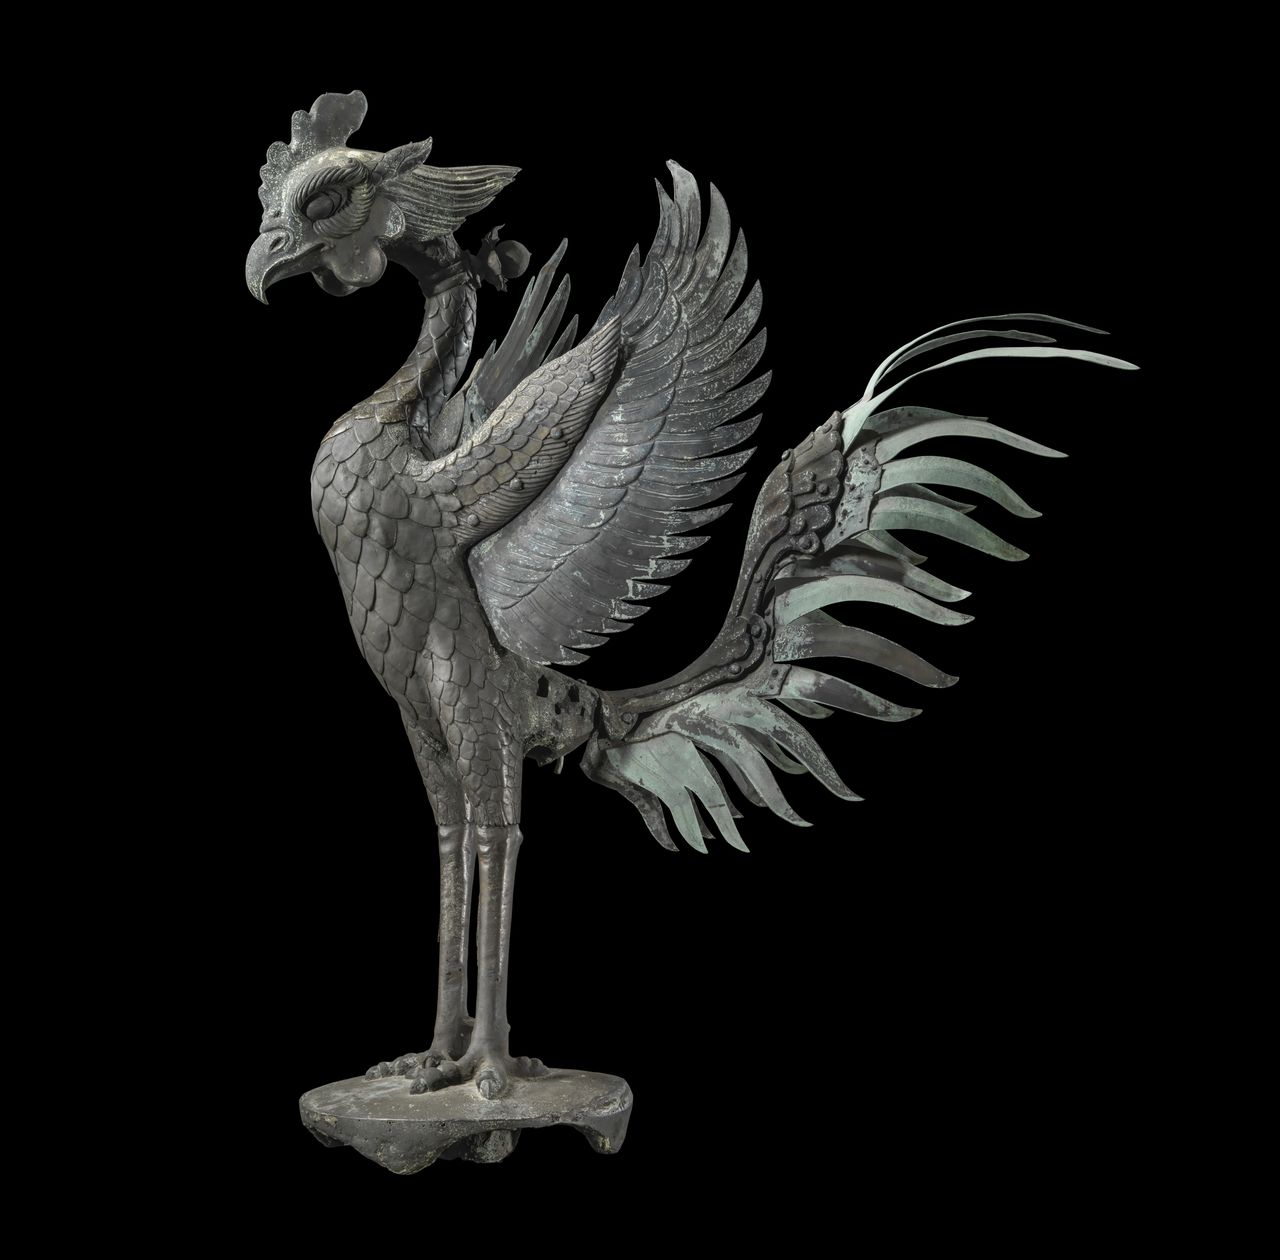 Феникс – мифическая птица. Оригинальная статуя феникса выставлена в музее Хосёкан на территории монастыря (фотография предоставлена Бёдоин)